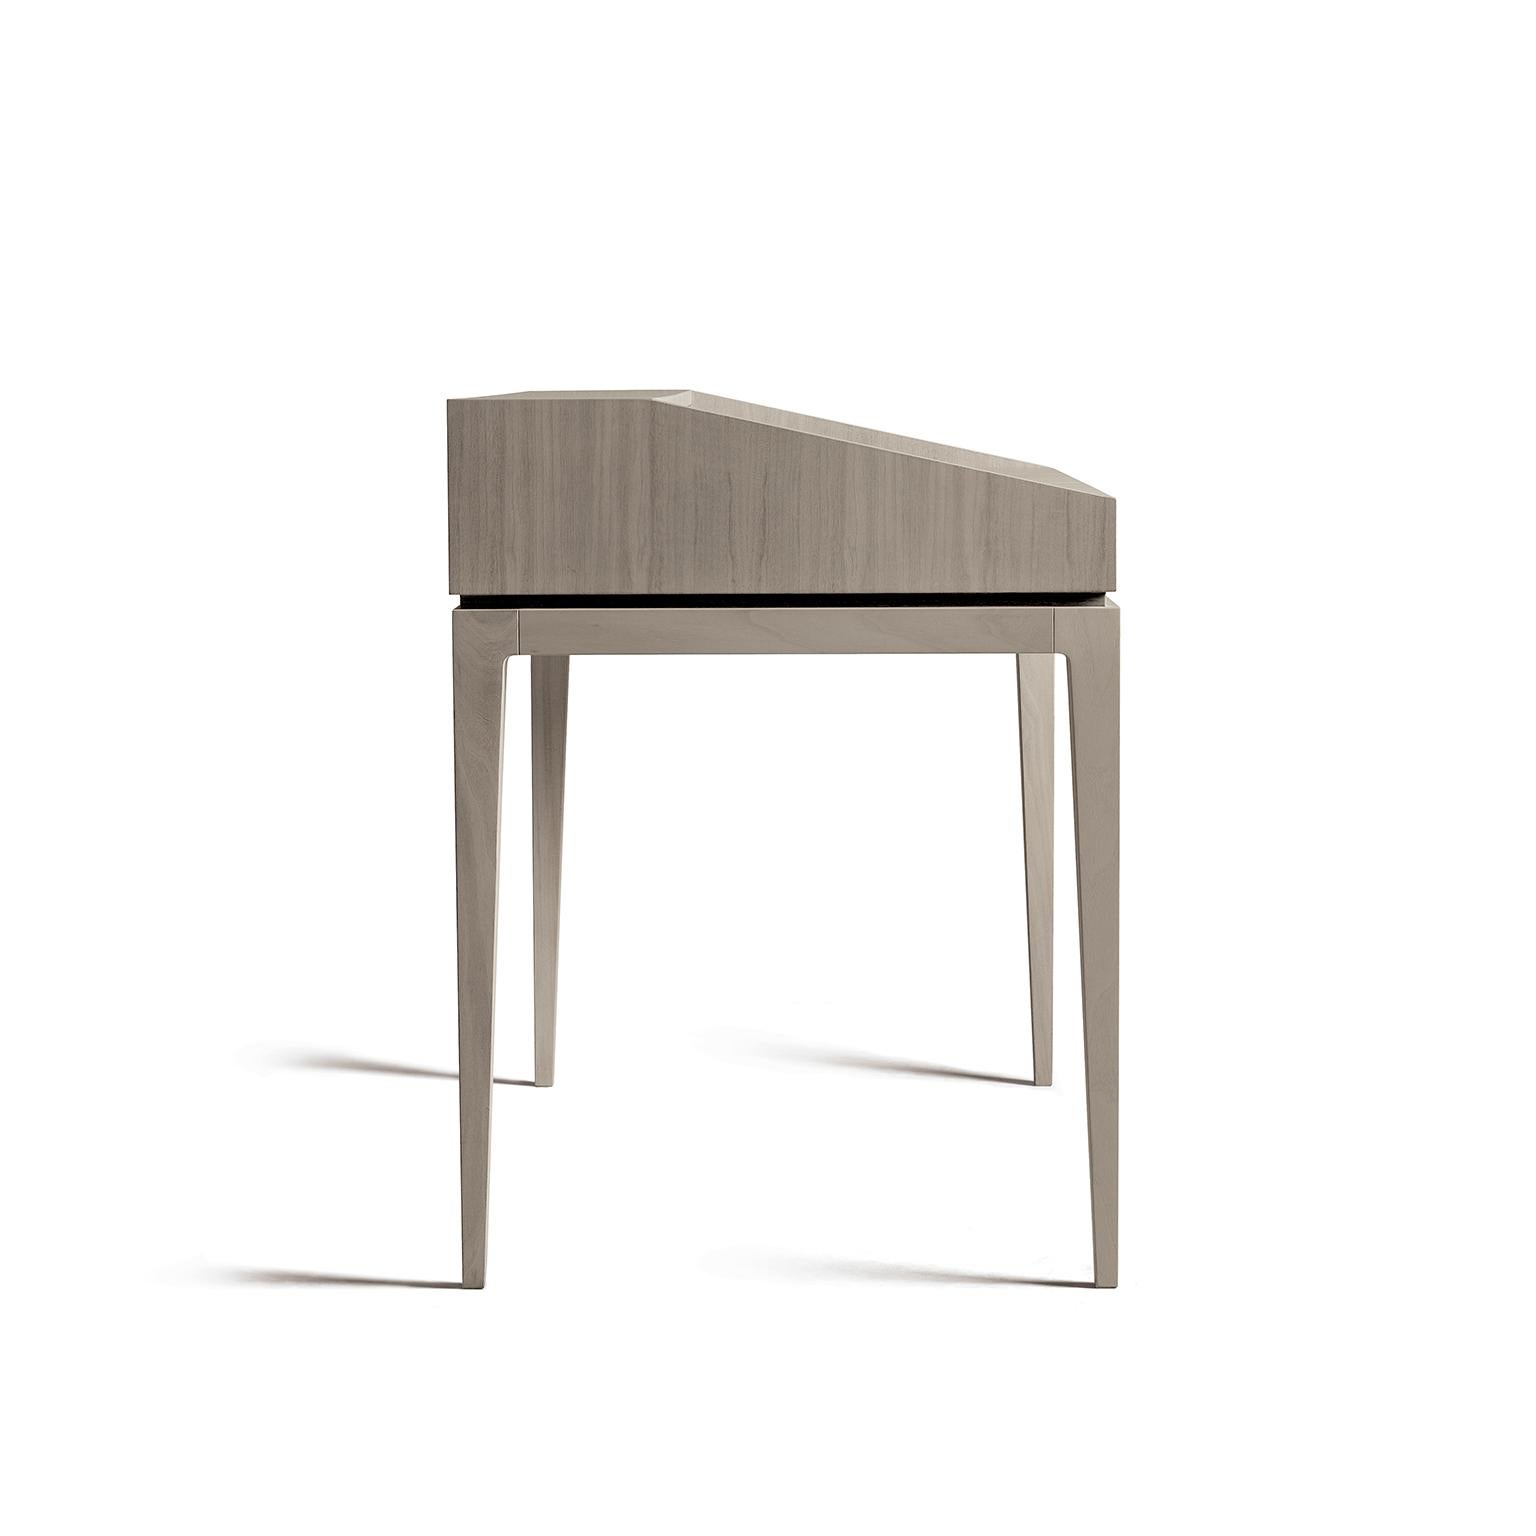 Der Massivholz-Schreibtisch Ideale vereint Ästhetik und Funktionalität. Ein Stück hochwertiger Handwerkskunst, maßgeschneidert für den täglichen Gebrauch, aber auch für die stilvolle Einrichtung. Der Schreibtisch verfügt über: Platte aus